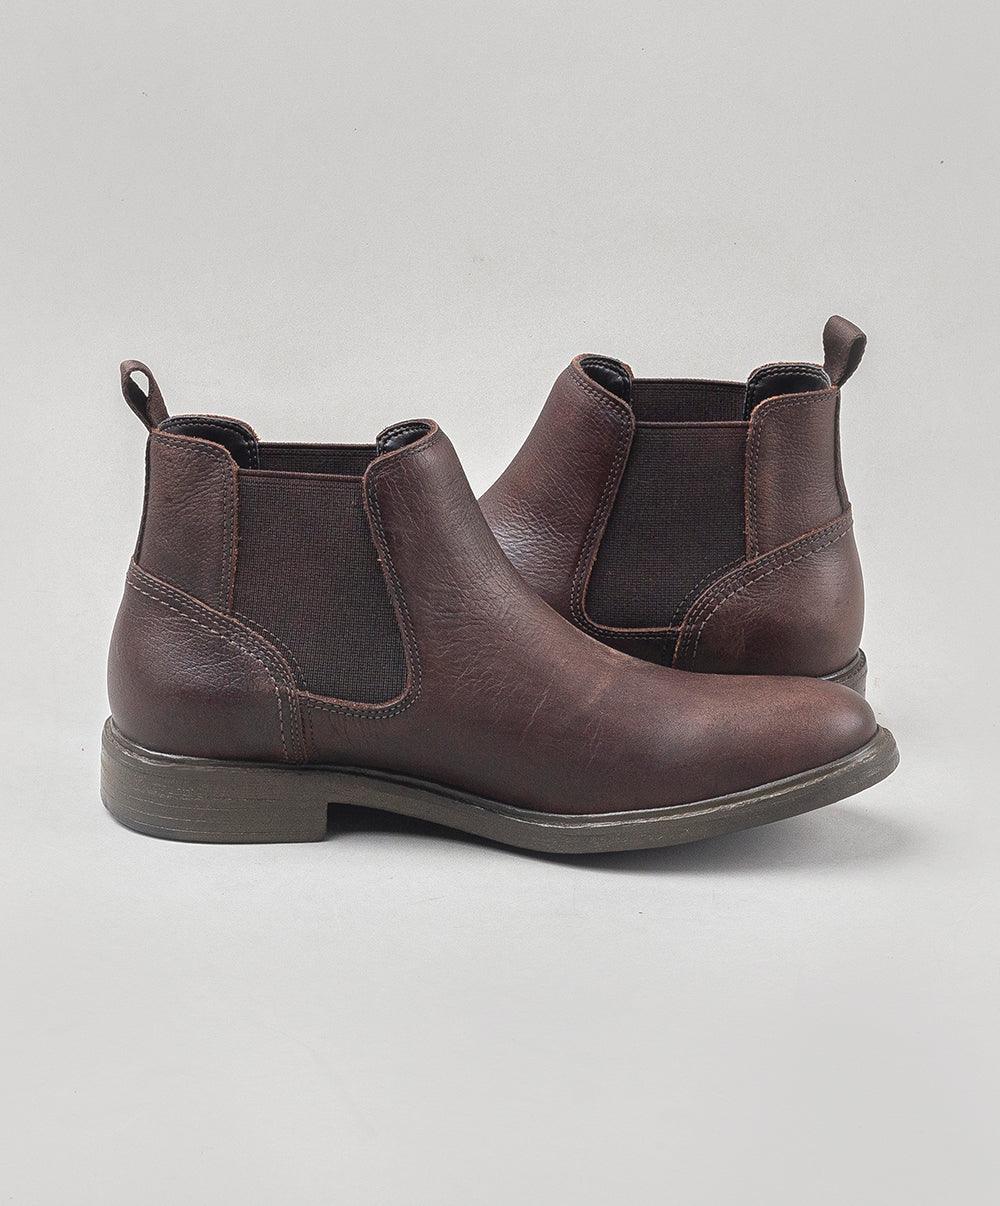 Democrata Men's Rust Boots - {{ collection.title }} - TIT